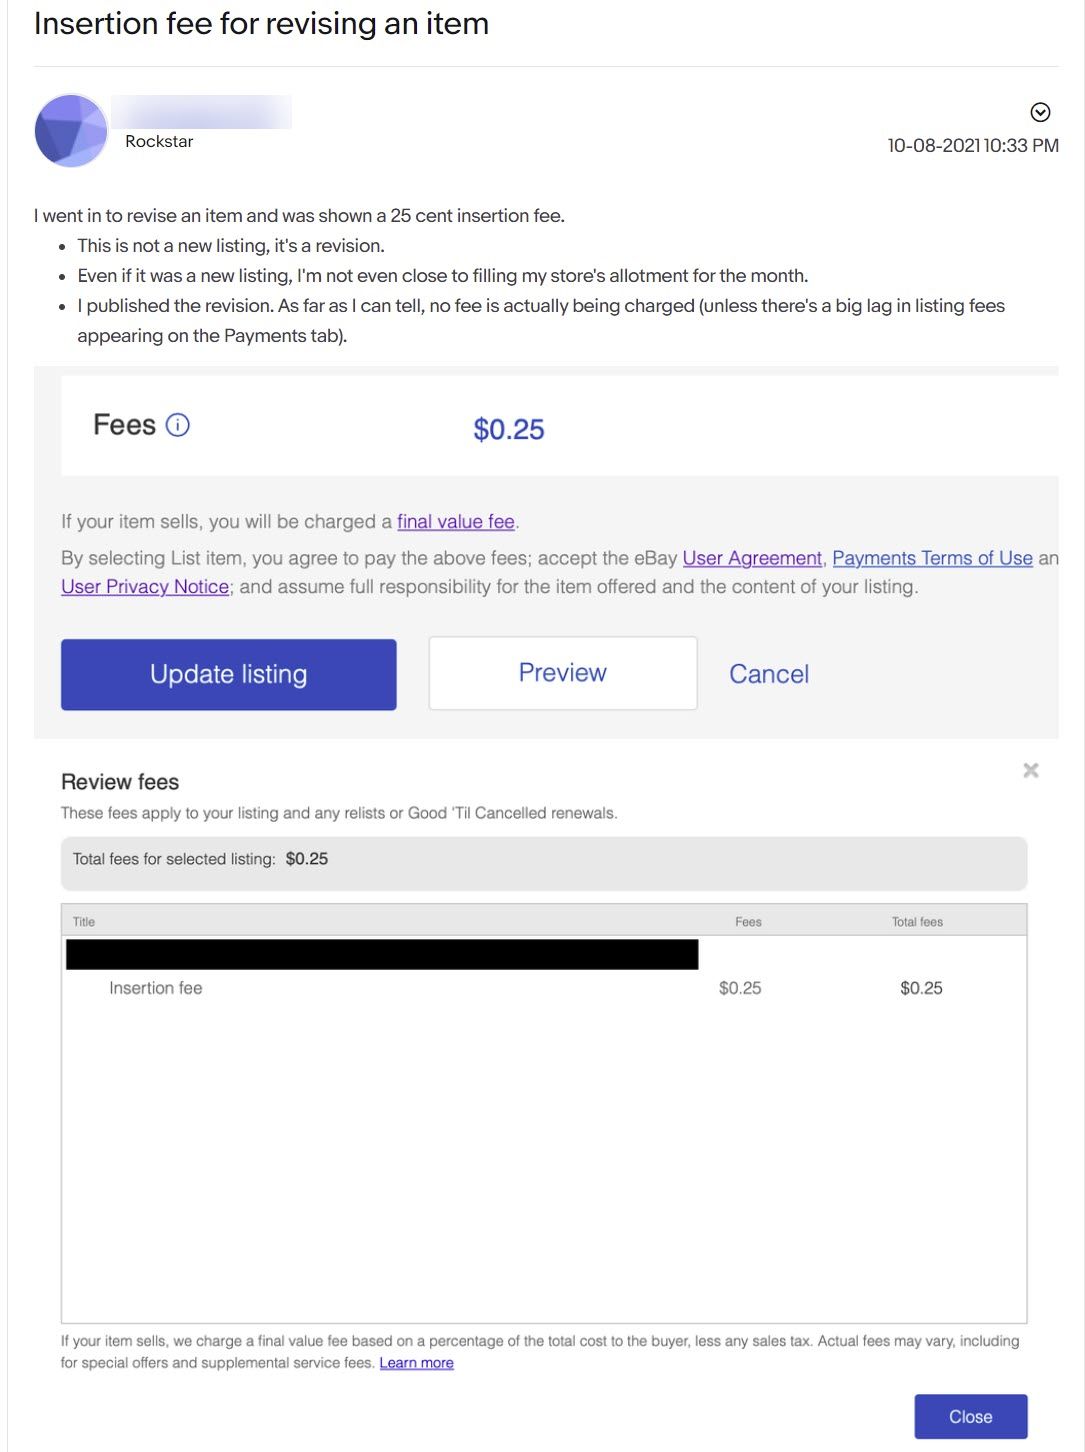 eBay insertion fee for revision error